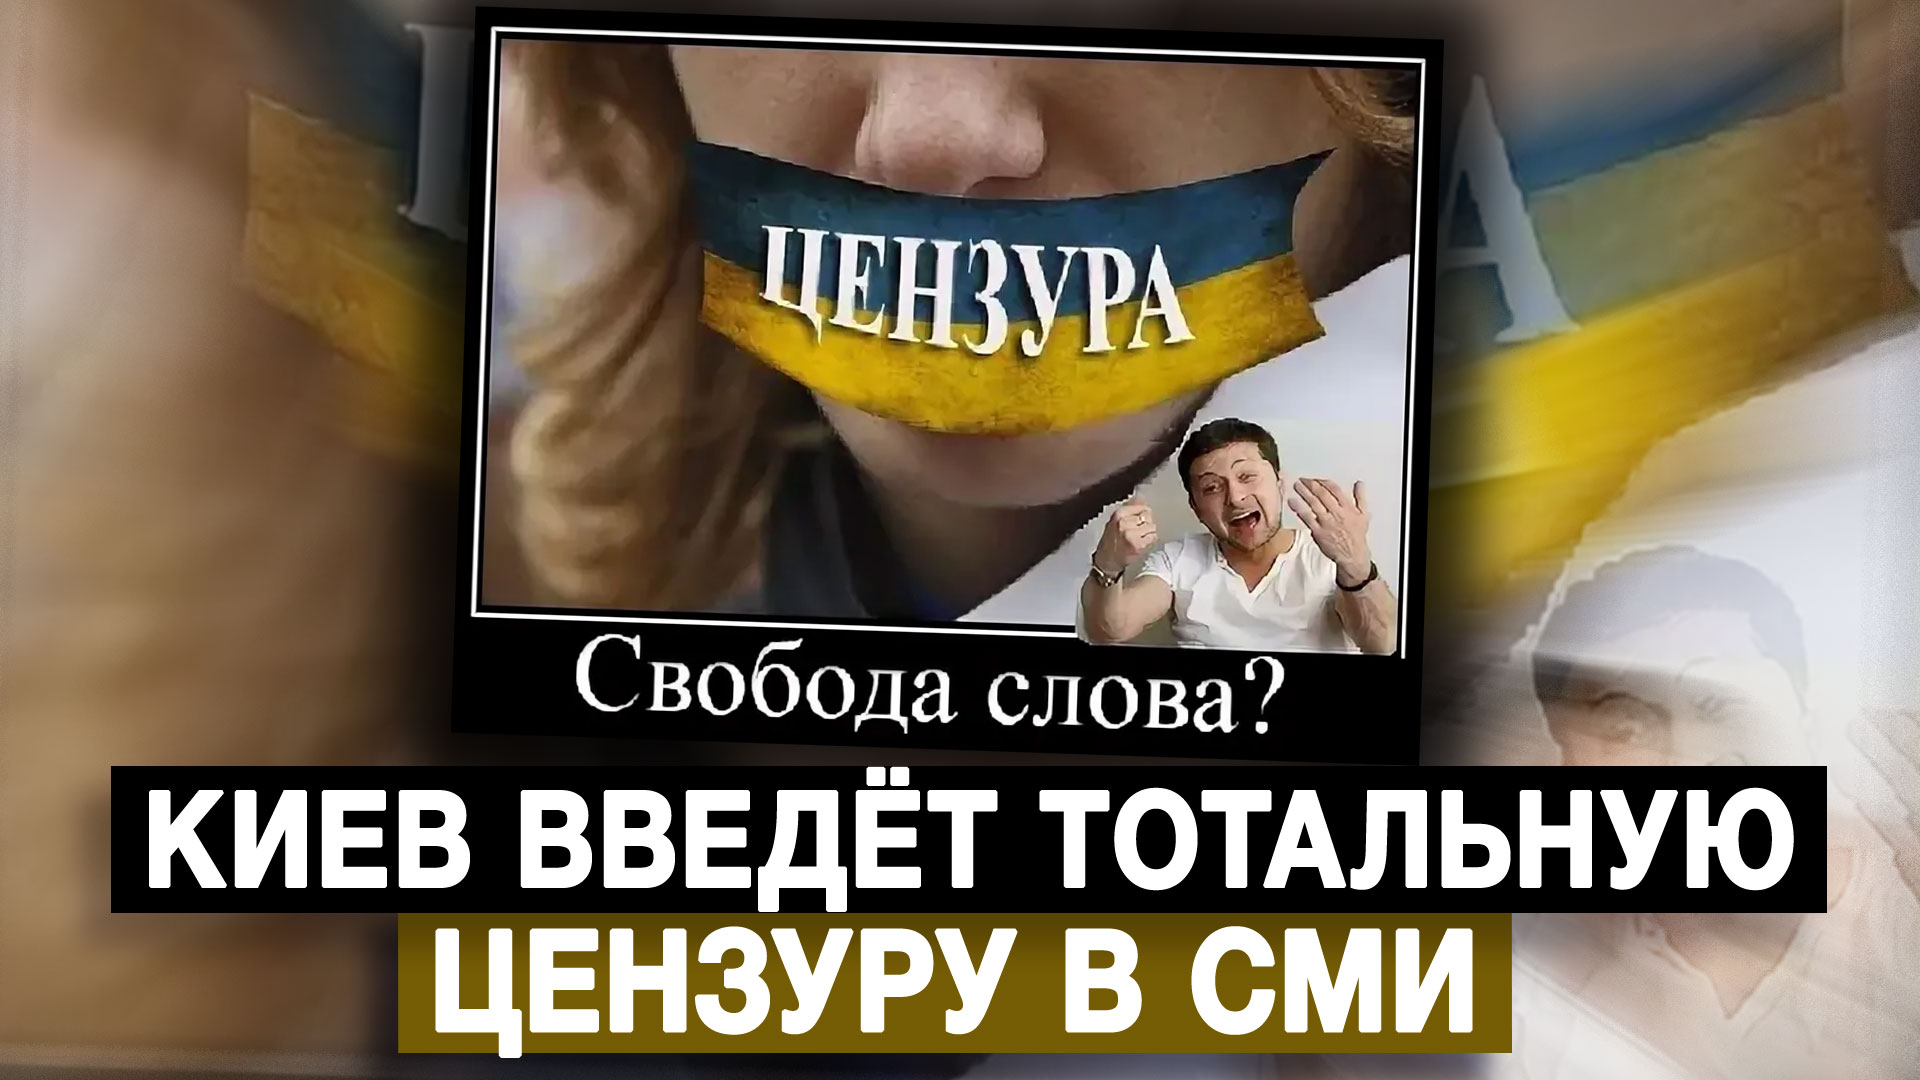 Киев введёт тотальную цензуру в СМИ